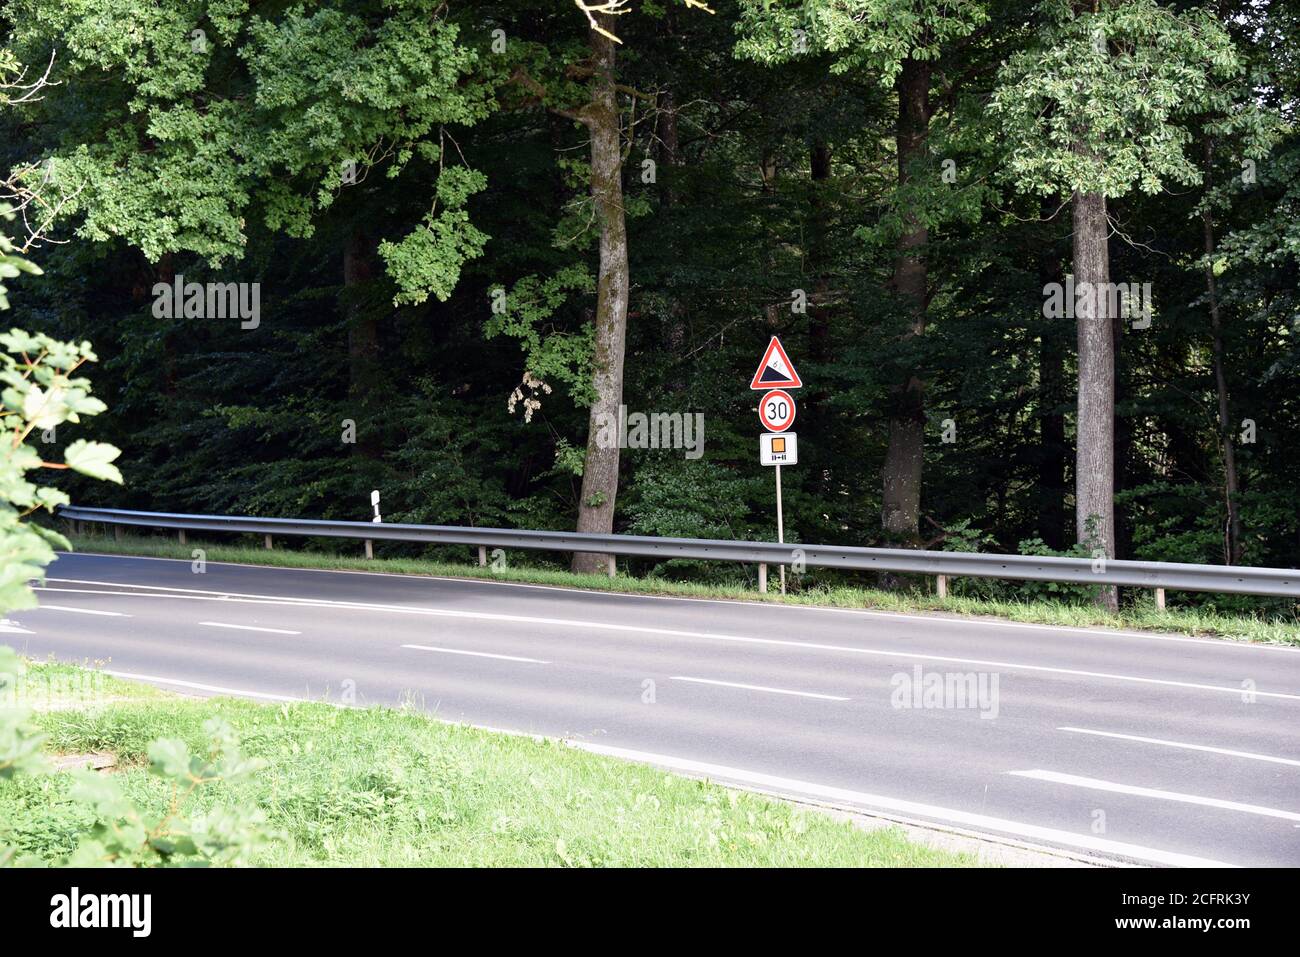 06 septembre 2020, Rhénanie-Palatinat, Prüm: Signalisation routière: Pente de 6% et 30 km/h pour les transporteurs de marchandises dangereuses. Photo: Horst Galuschka/dpa Banque D'Images